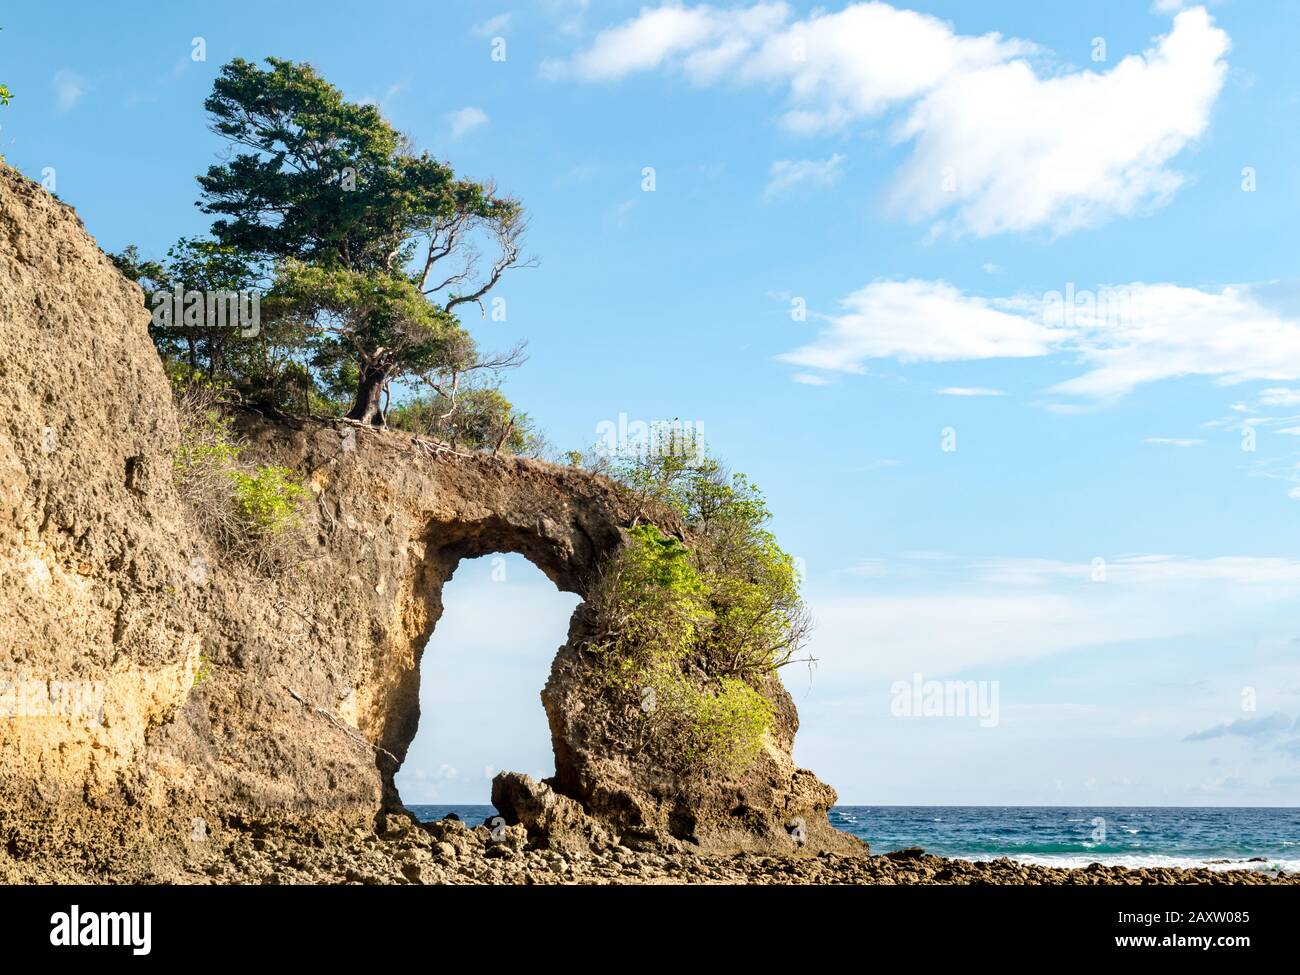 La formation géologique de Rock Arch sur l'île de Neil, ressemble à un pont naturel ou à une porte naturelle, formée d'une érosion constante; avec la mer calme et le ciel bleu Banque D'Images